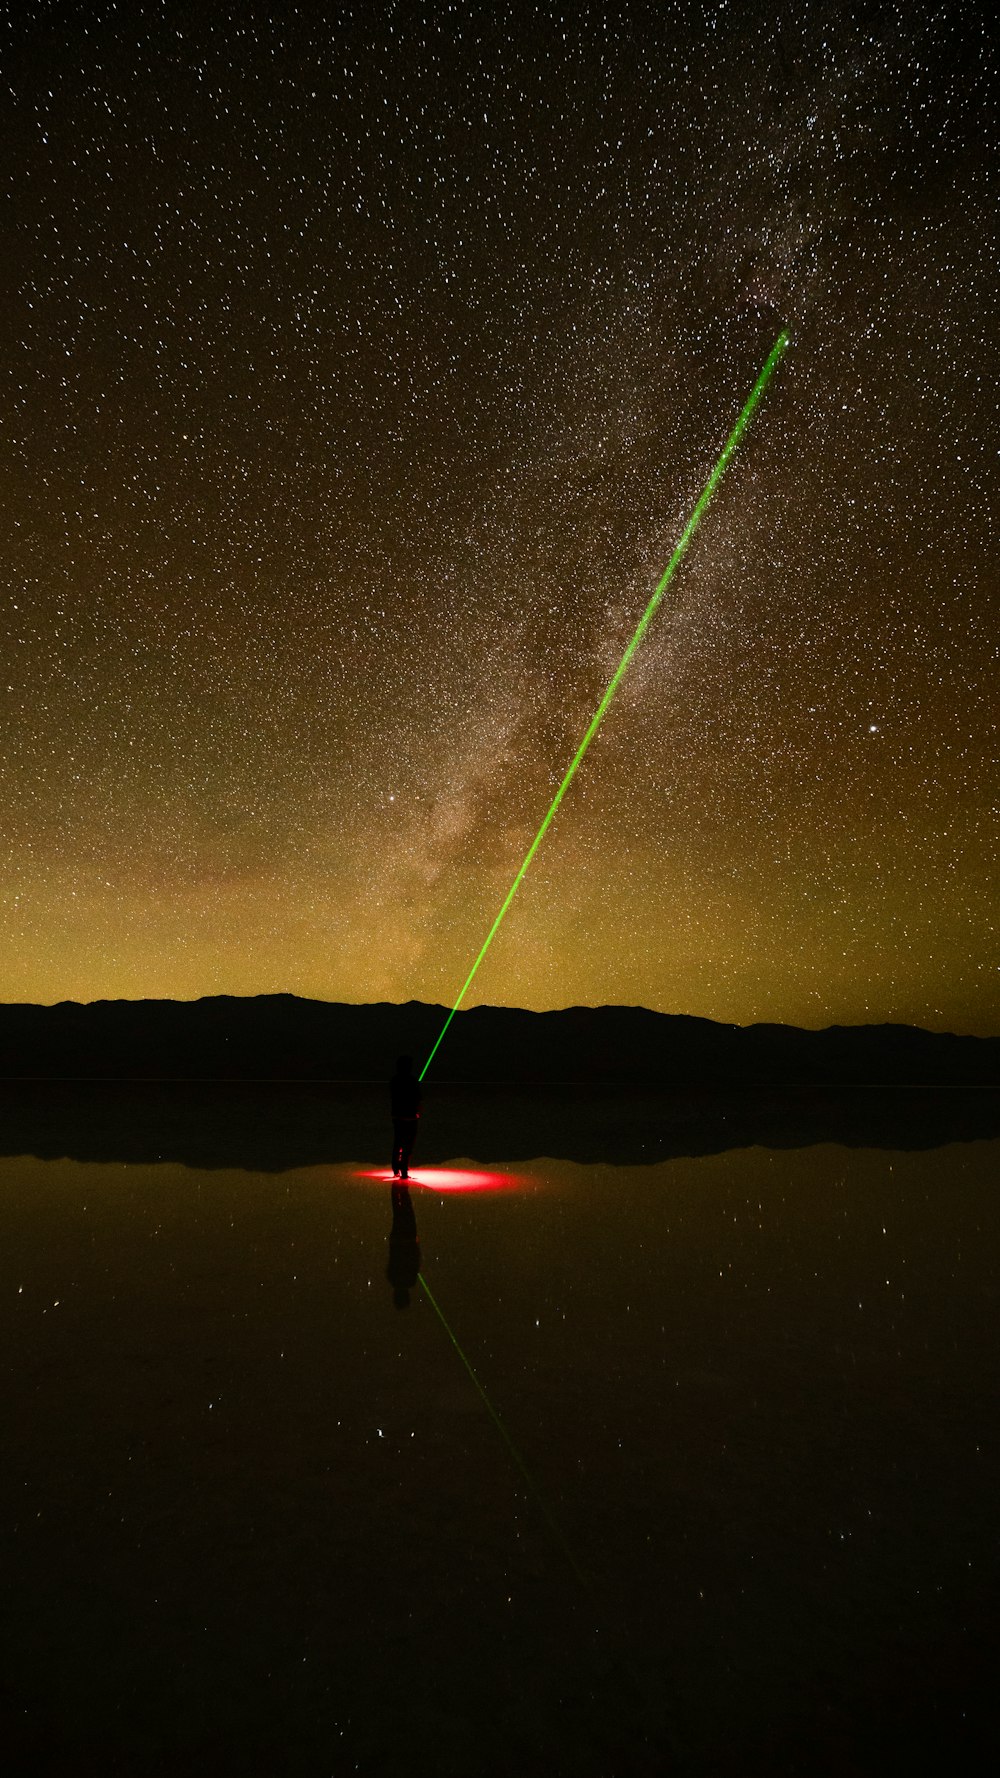 Un laser verde è visibile nel cielo notturno